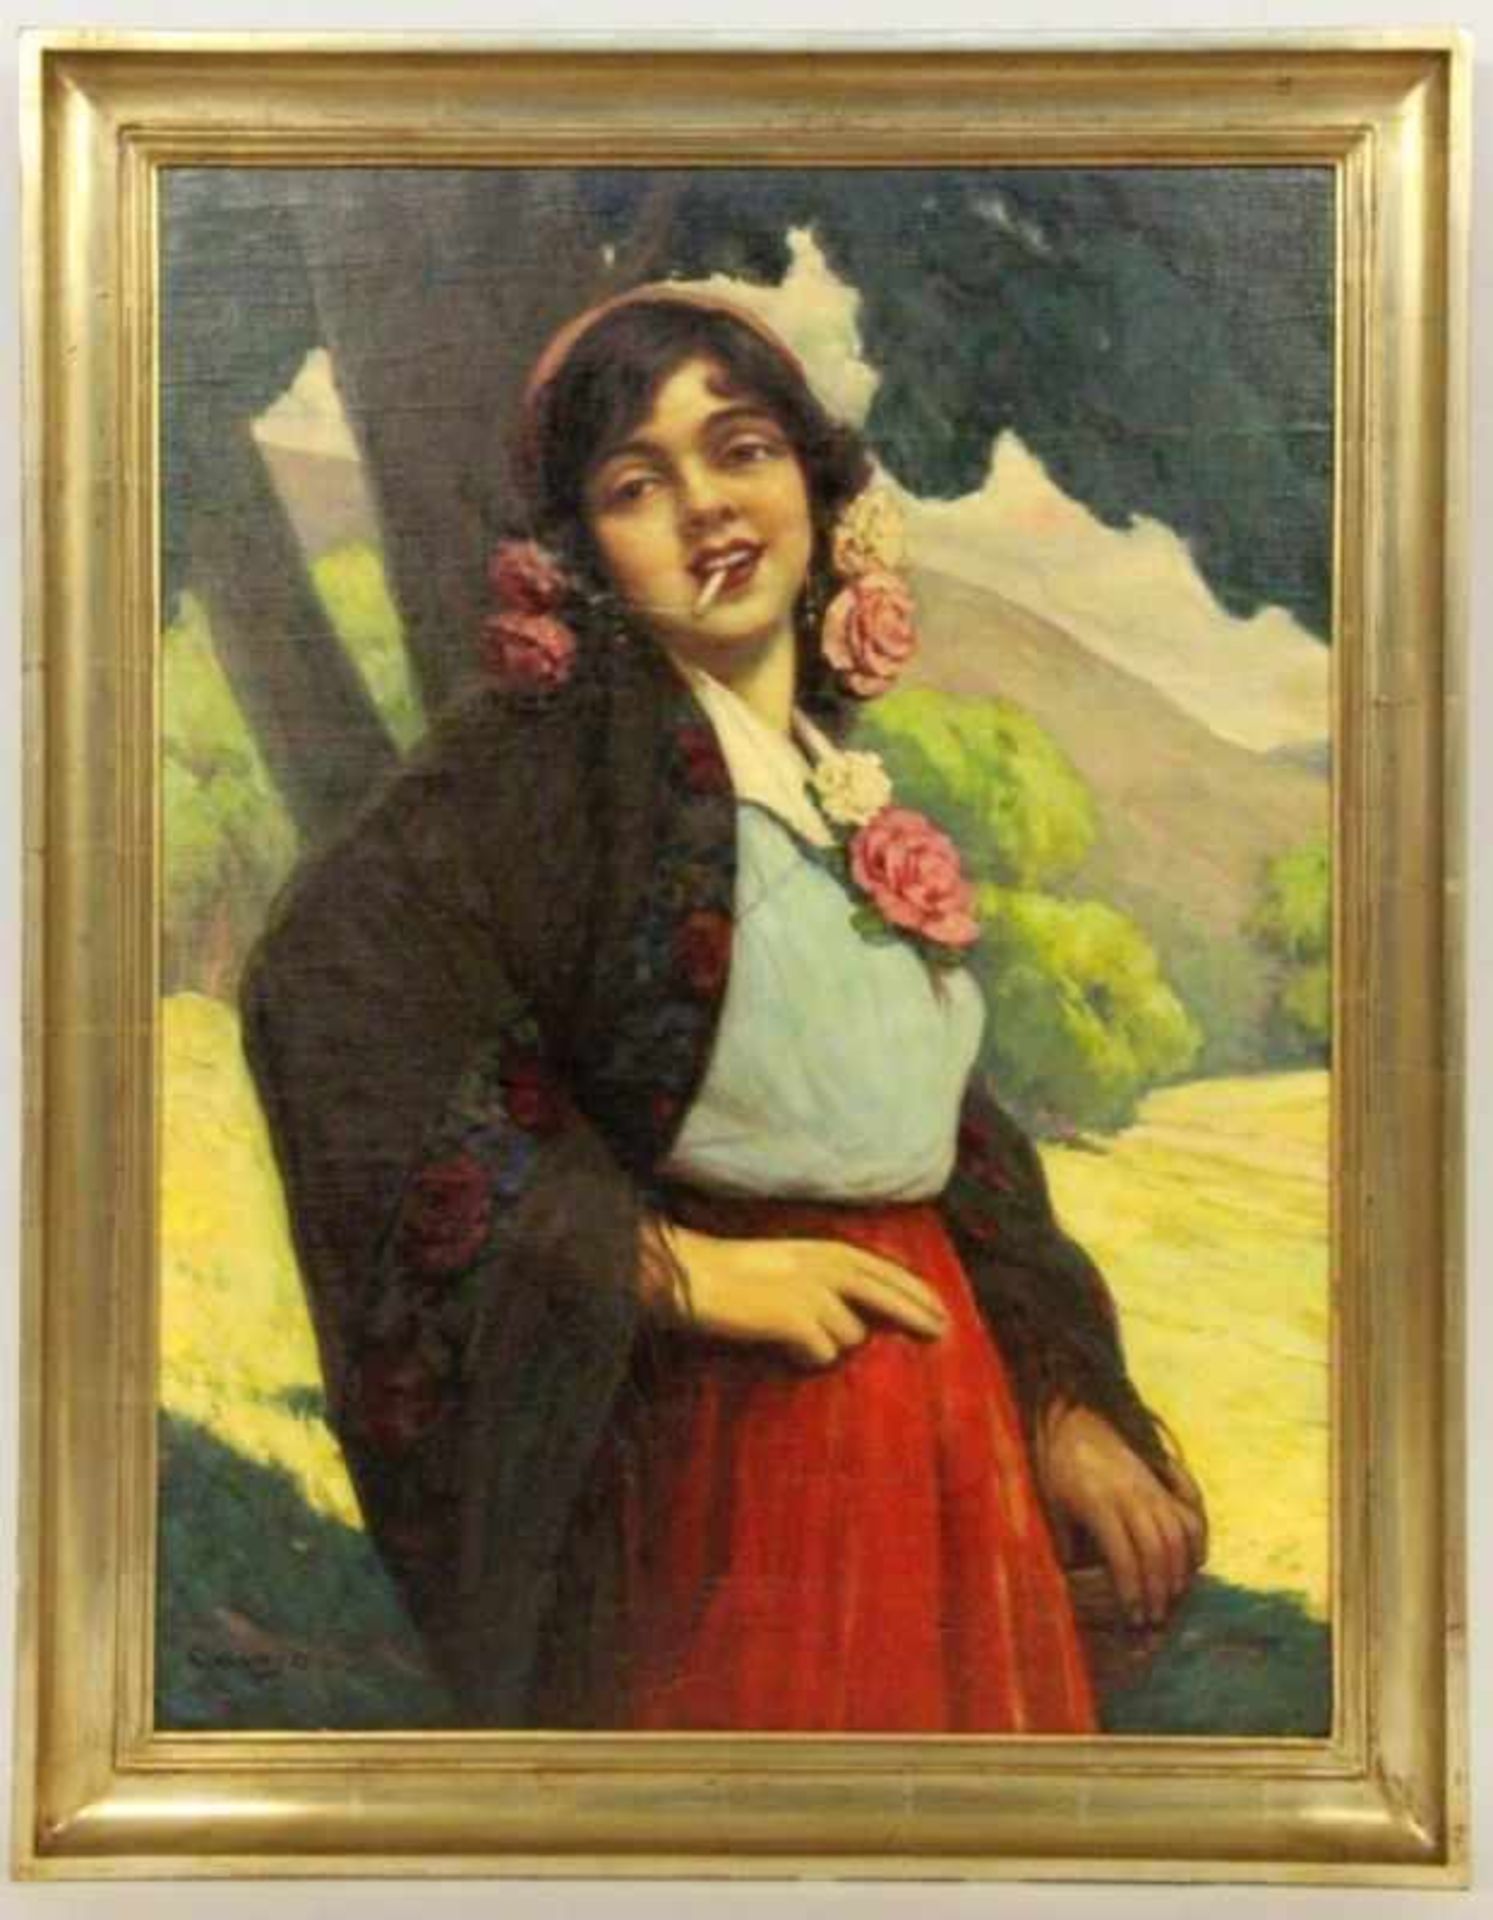 CSALANY, BELAUngarischer Maler 1879 - 1948 Rauchende Zigeunerin. Öl/Lwd., signiert. 79x59cm, Ra.